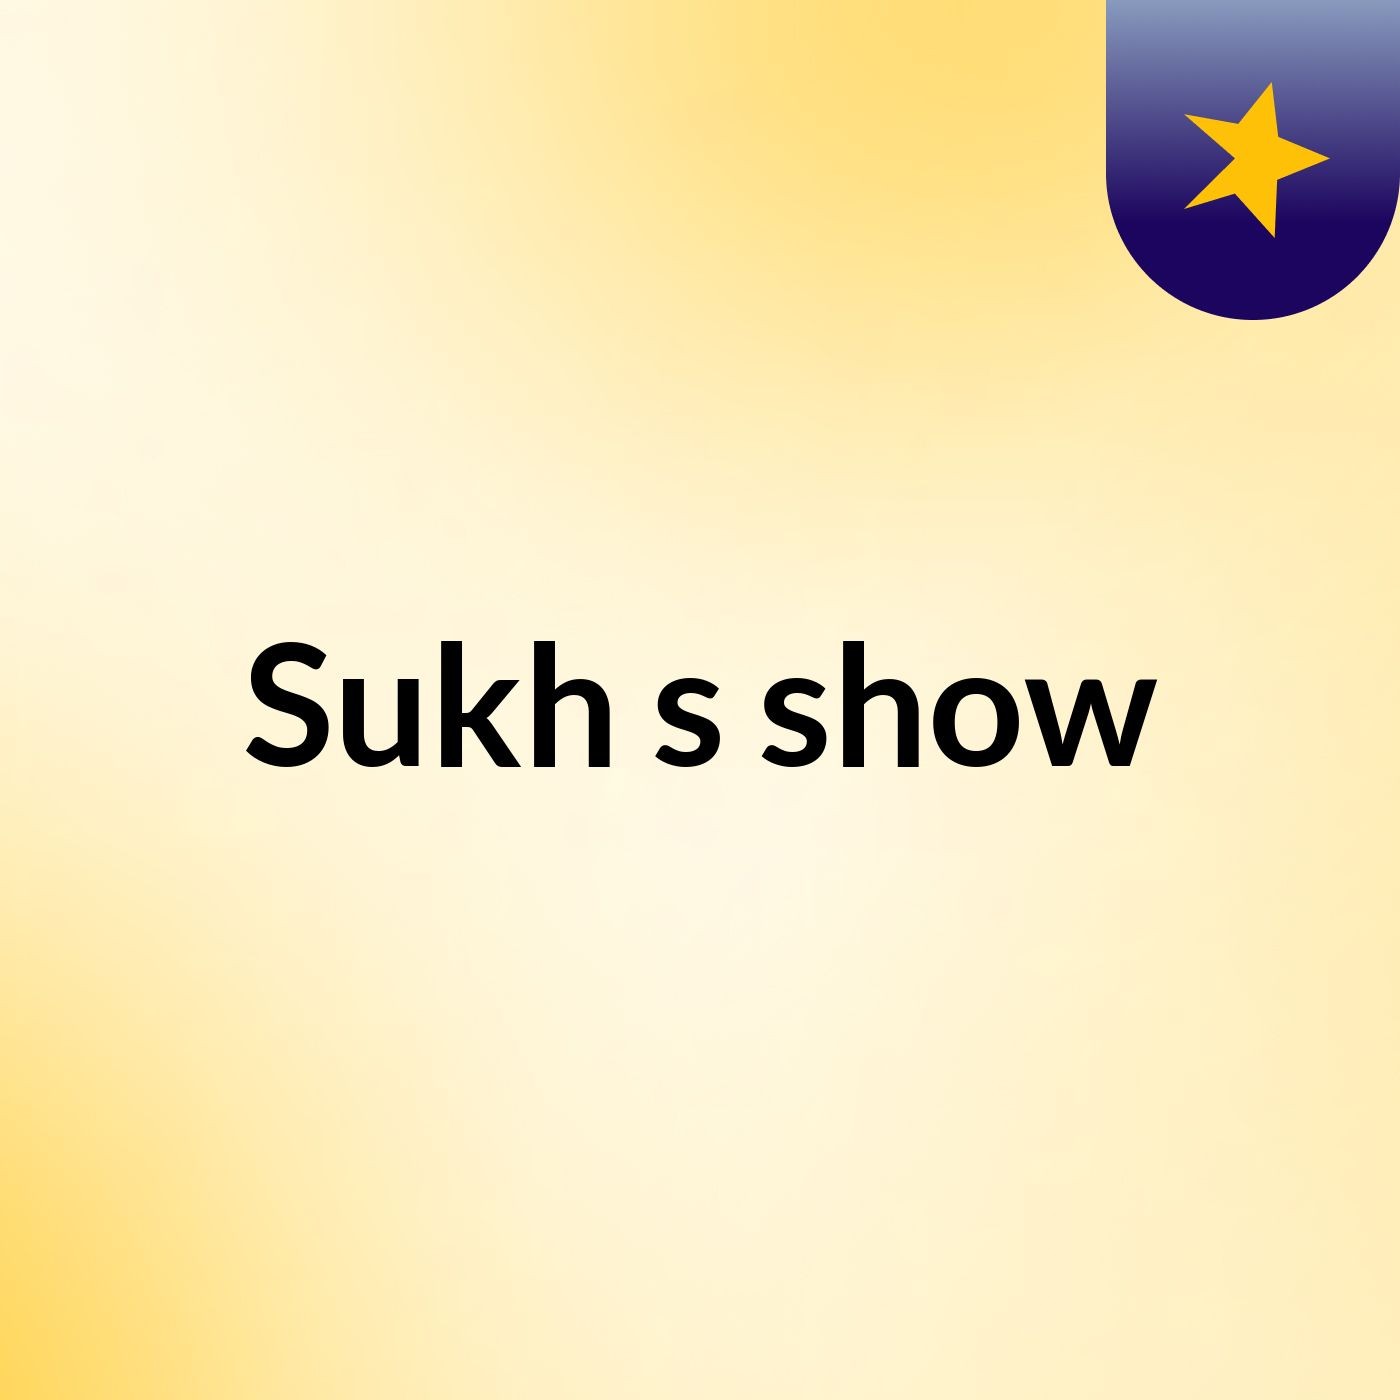 Sukh's show